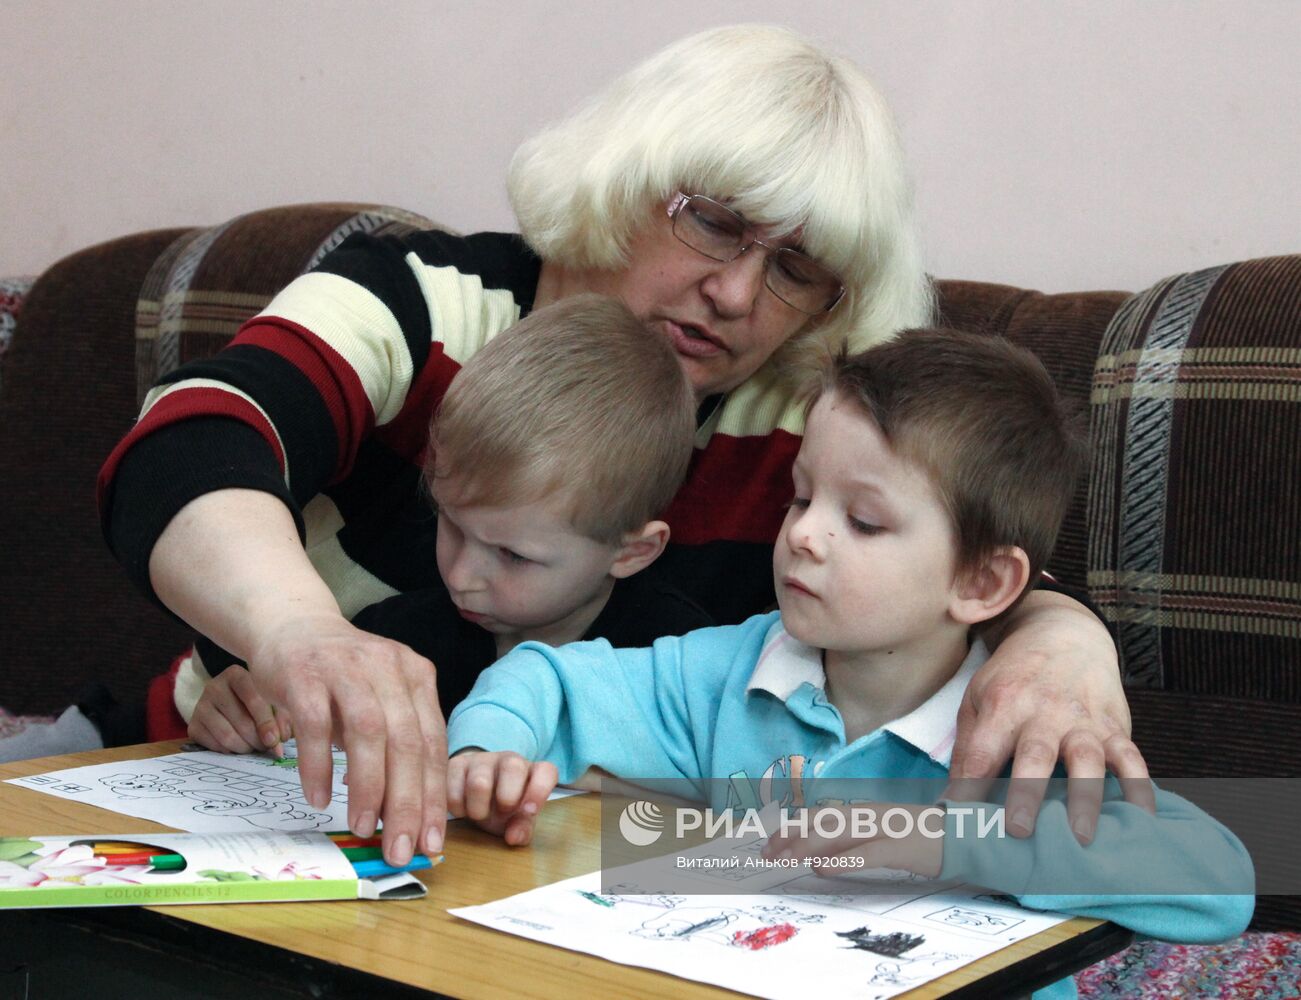 Работа Центра "Парус надежды" во Владивостоке